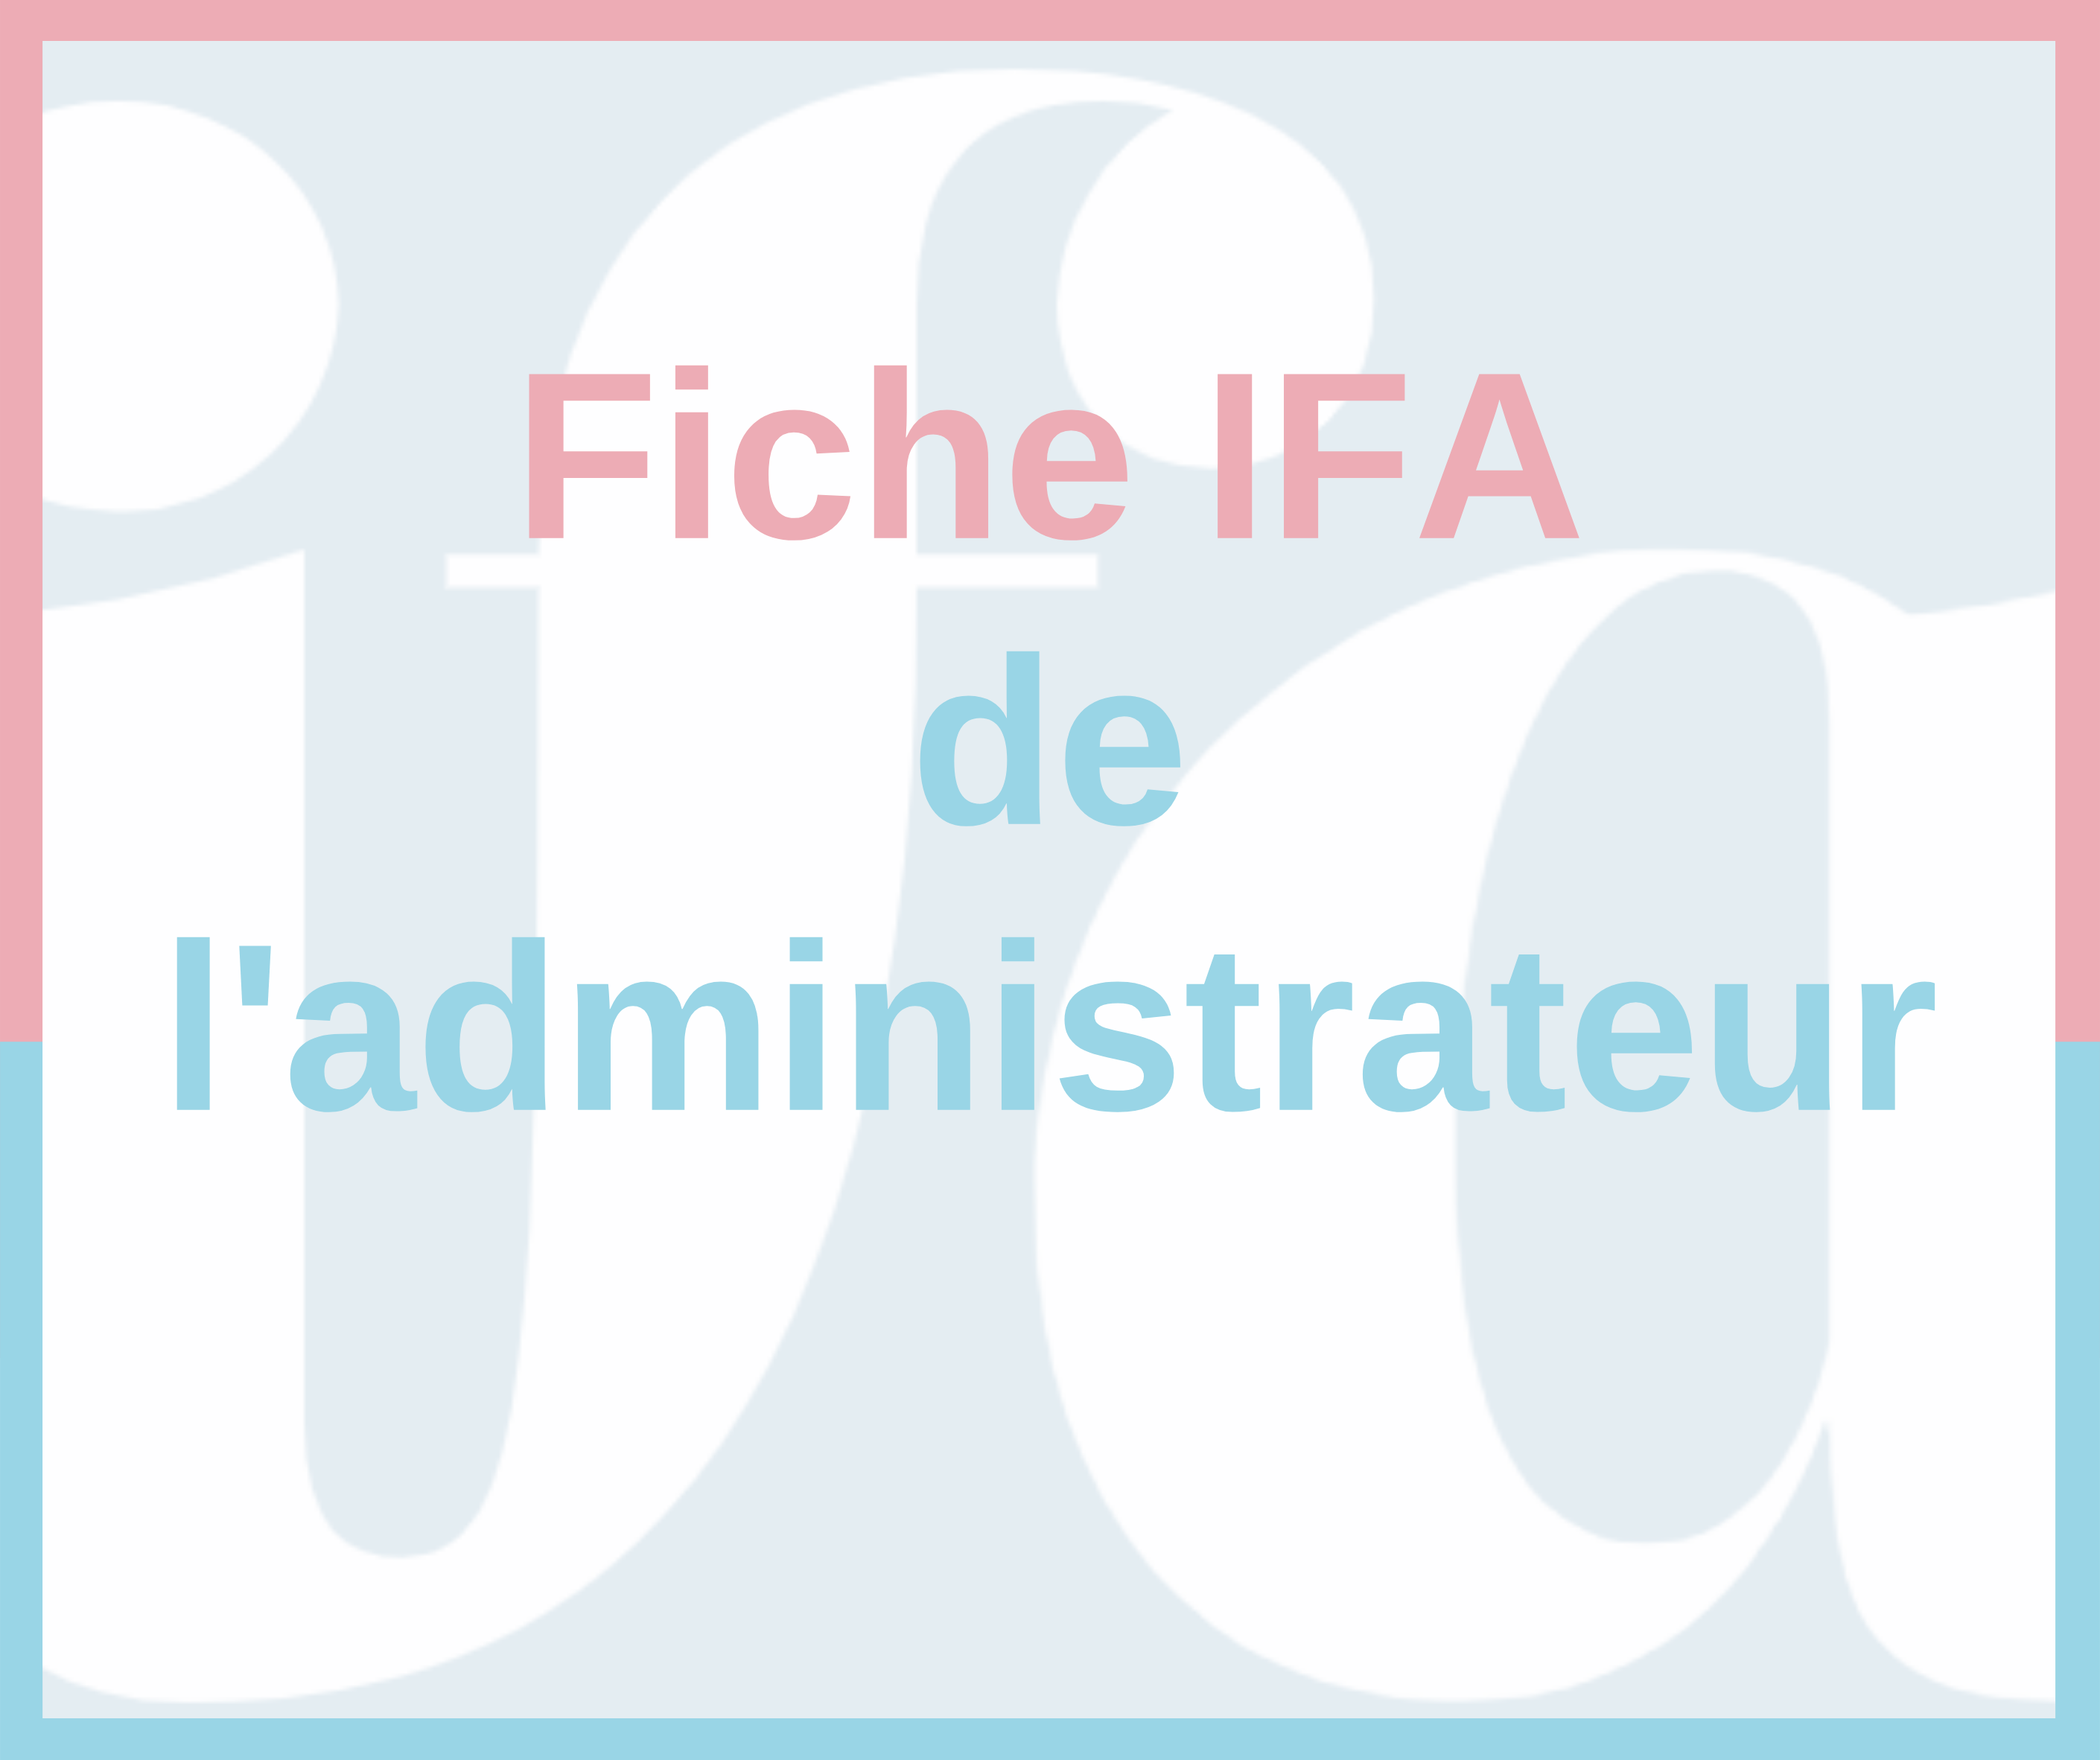 Fiche IFA de l'administrateur - Les administrateurs représentants les salariés au sein des SA et SCA depuis la loi Pacte